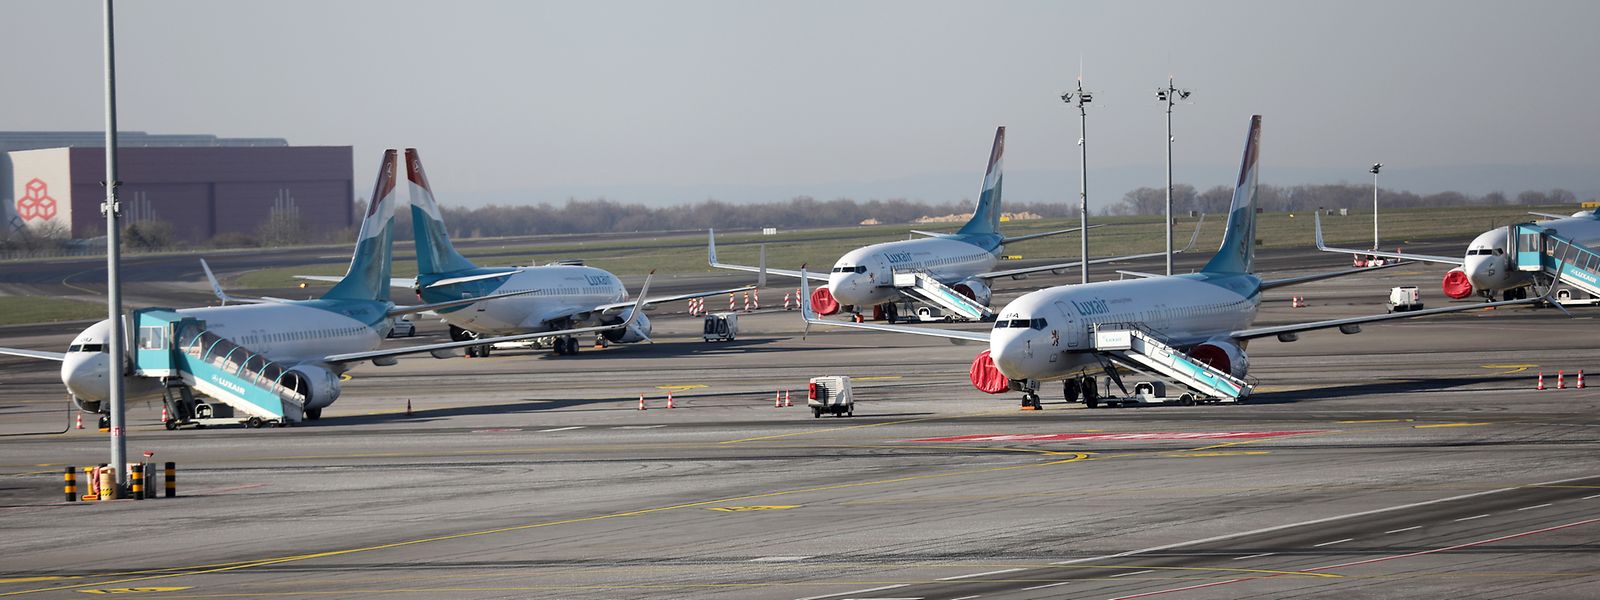 Confinée depuis le 23 mars à l'aéroport du Findel, la flotte de Luxair nécessite une maintenance aussi stricte que particulière

